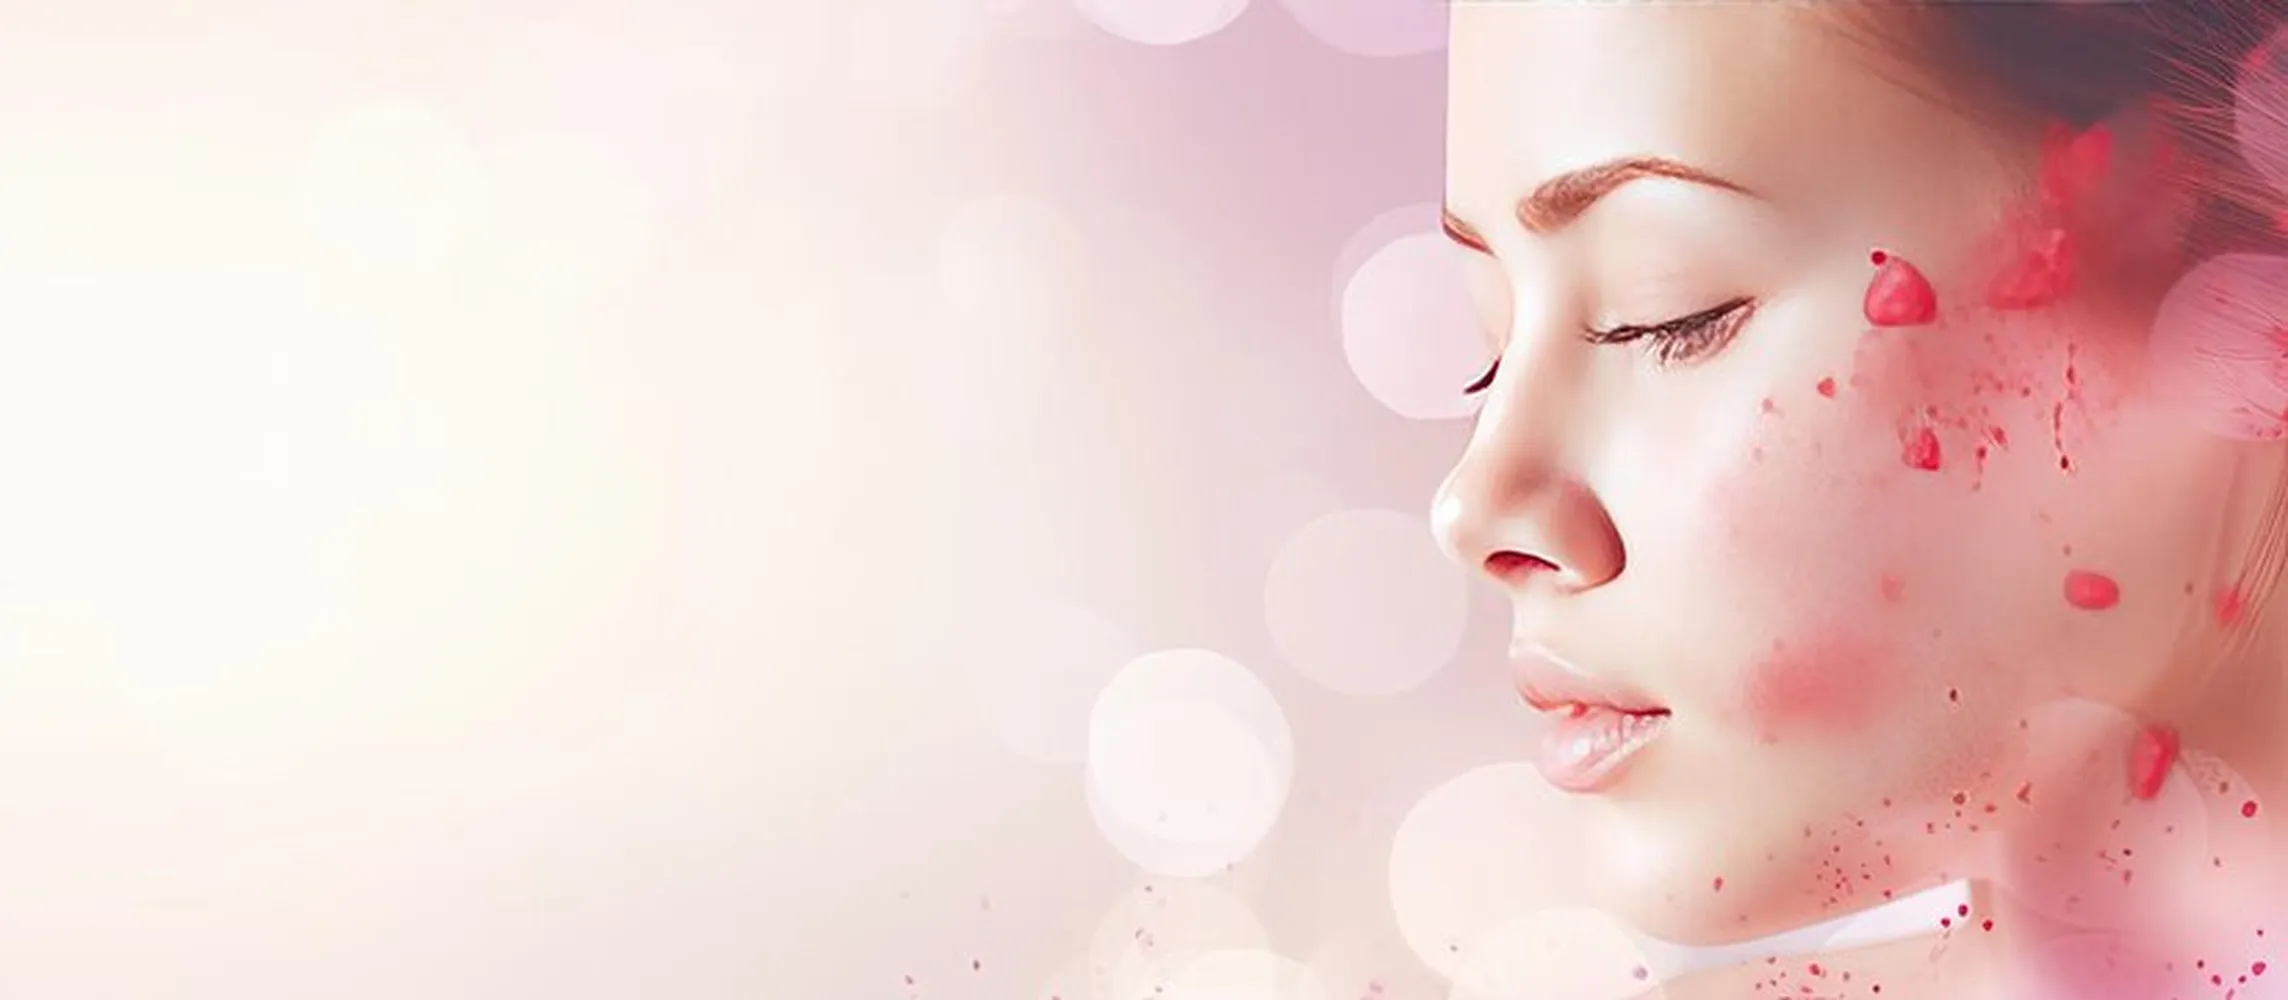 پوستر کلینیک زیبایی با مفهوم درمان های طبیعی بیماری های پوستی